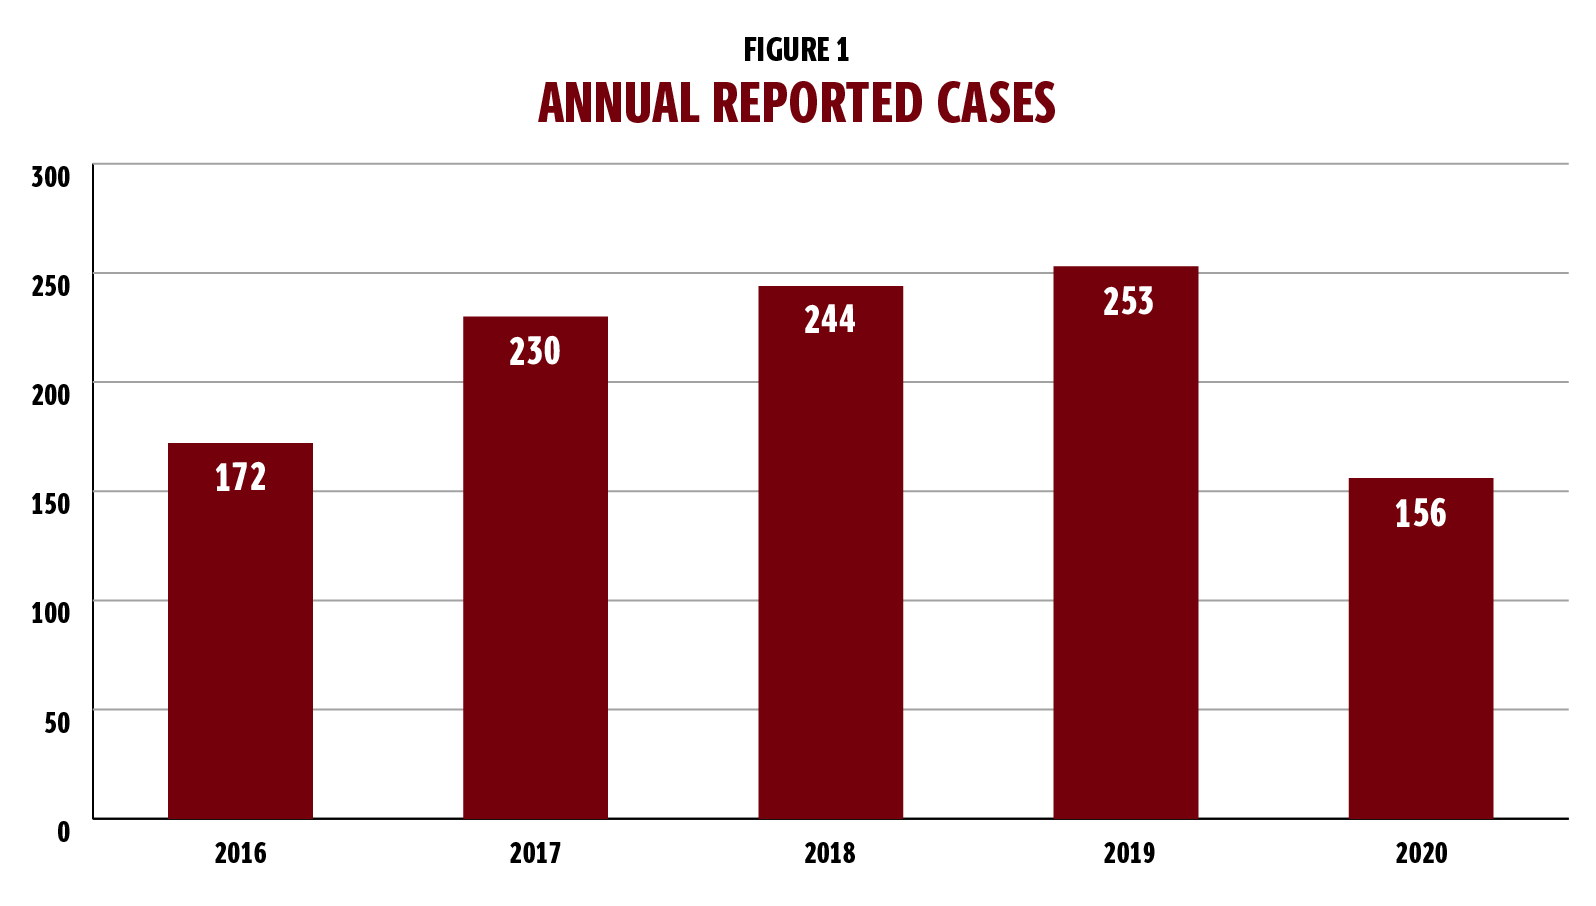 图1是一个柱状图，显示了每年报告的性骚扰和暴力案件。该图表包括5个柱状图，涵盖了2016年至2020年。2016年有172例。2017年有230例。2018年为244例。2019年有253例。2020年，有156例病例。